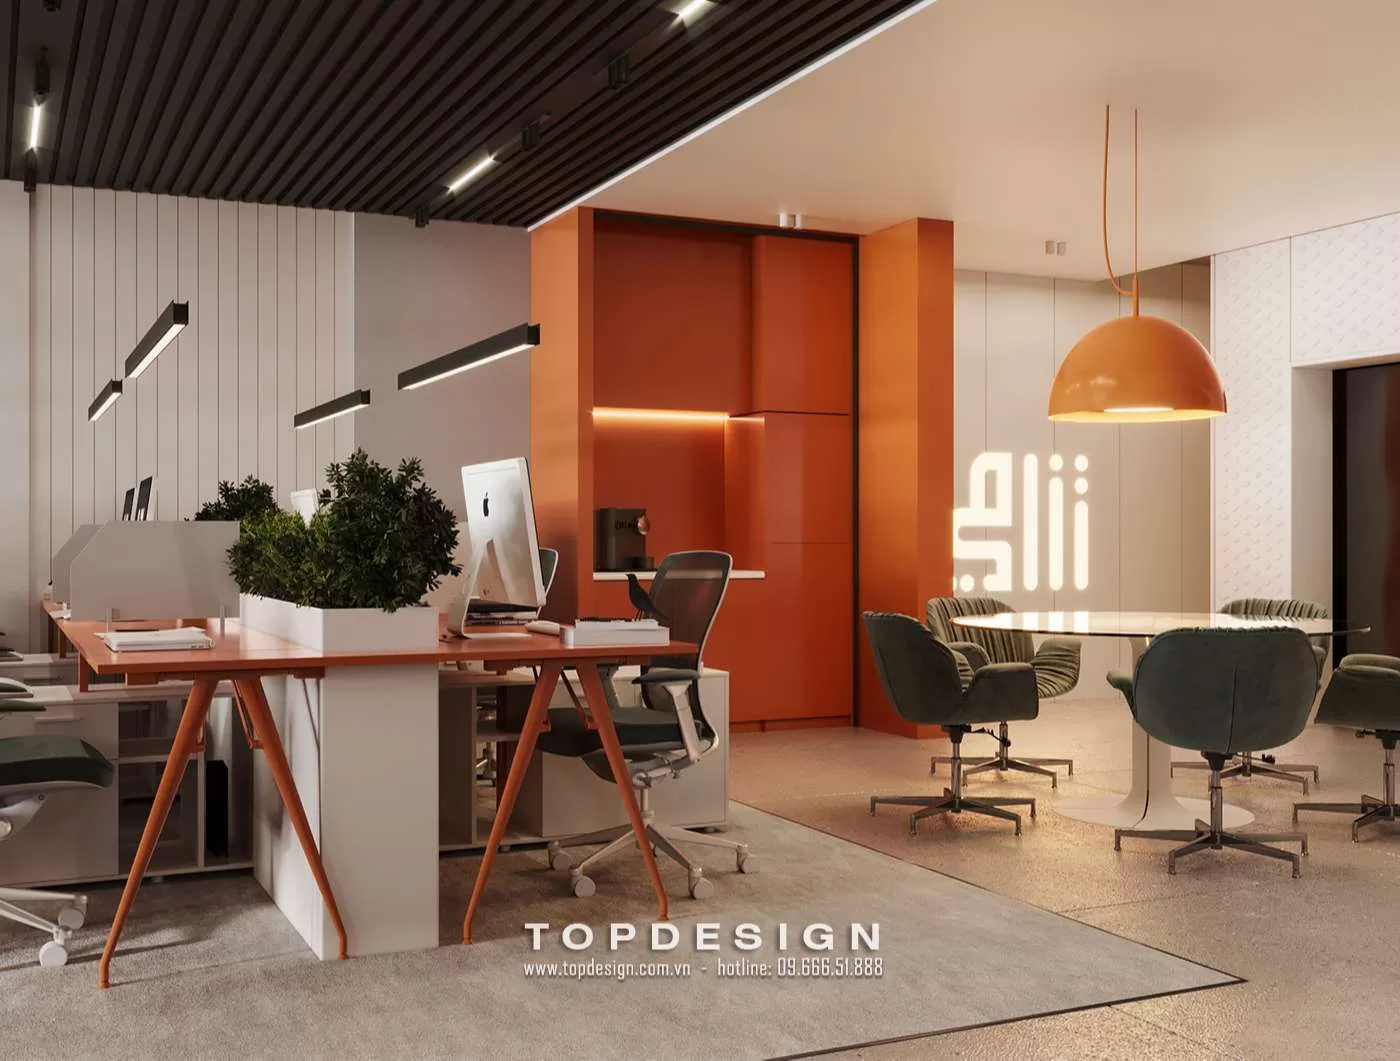 Lưu ý khi thiết kế văn phòng - TOPDESIGN - 4